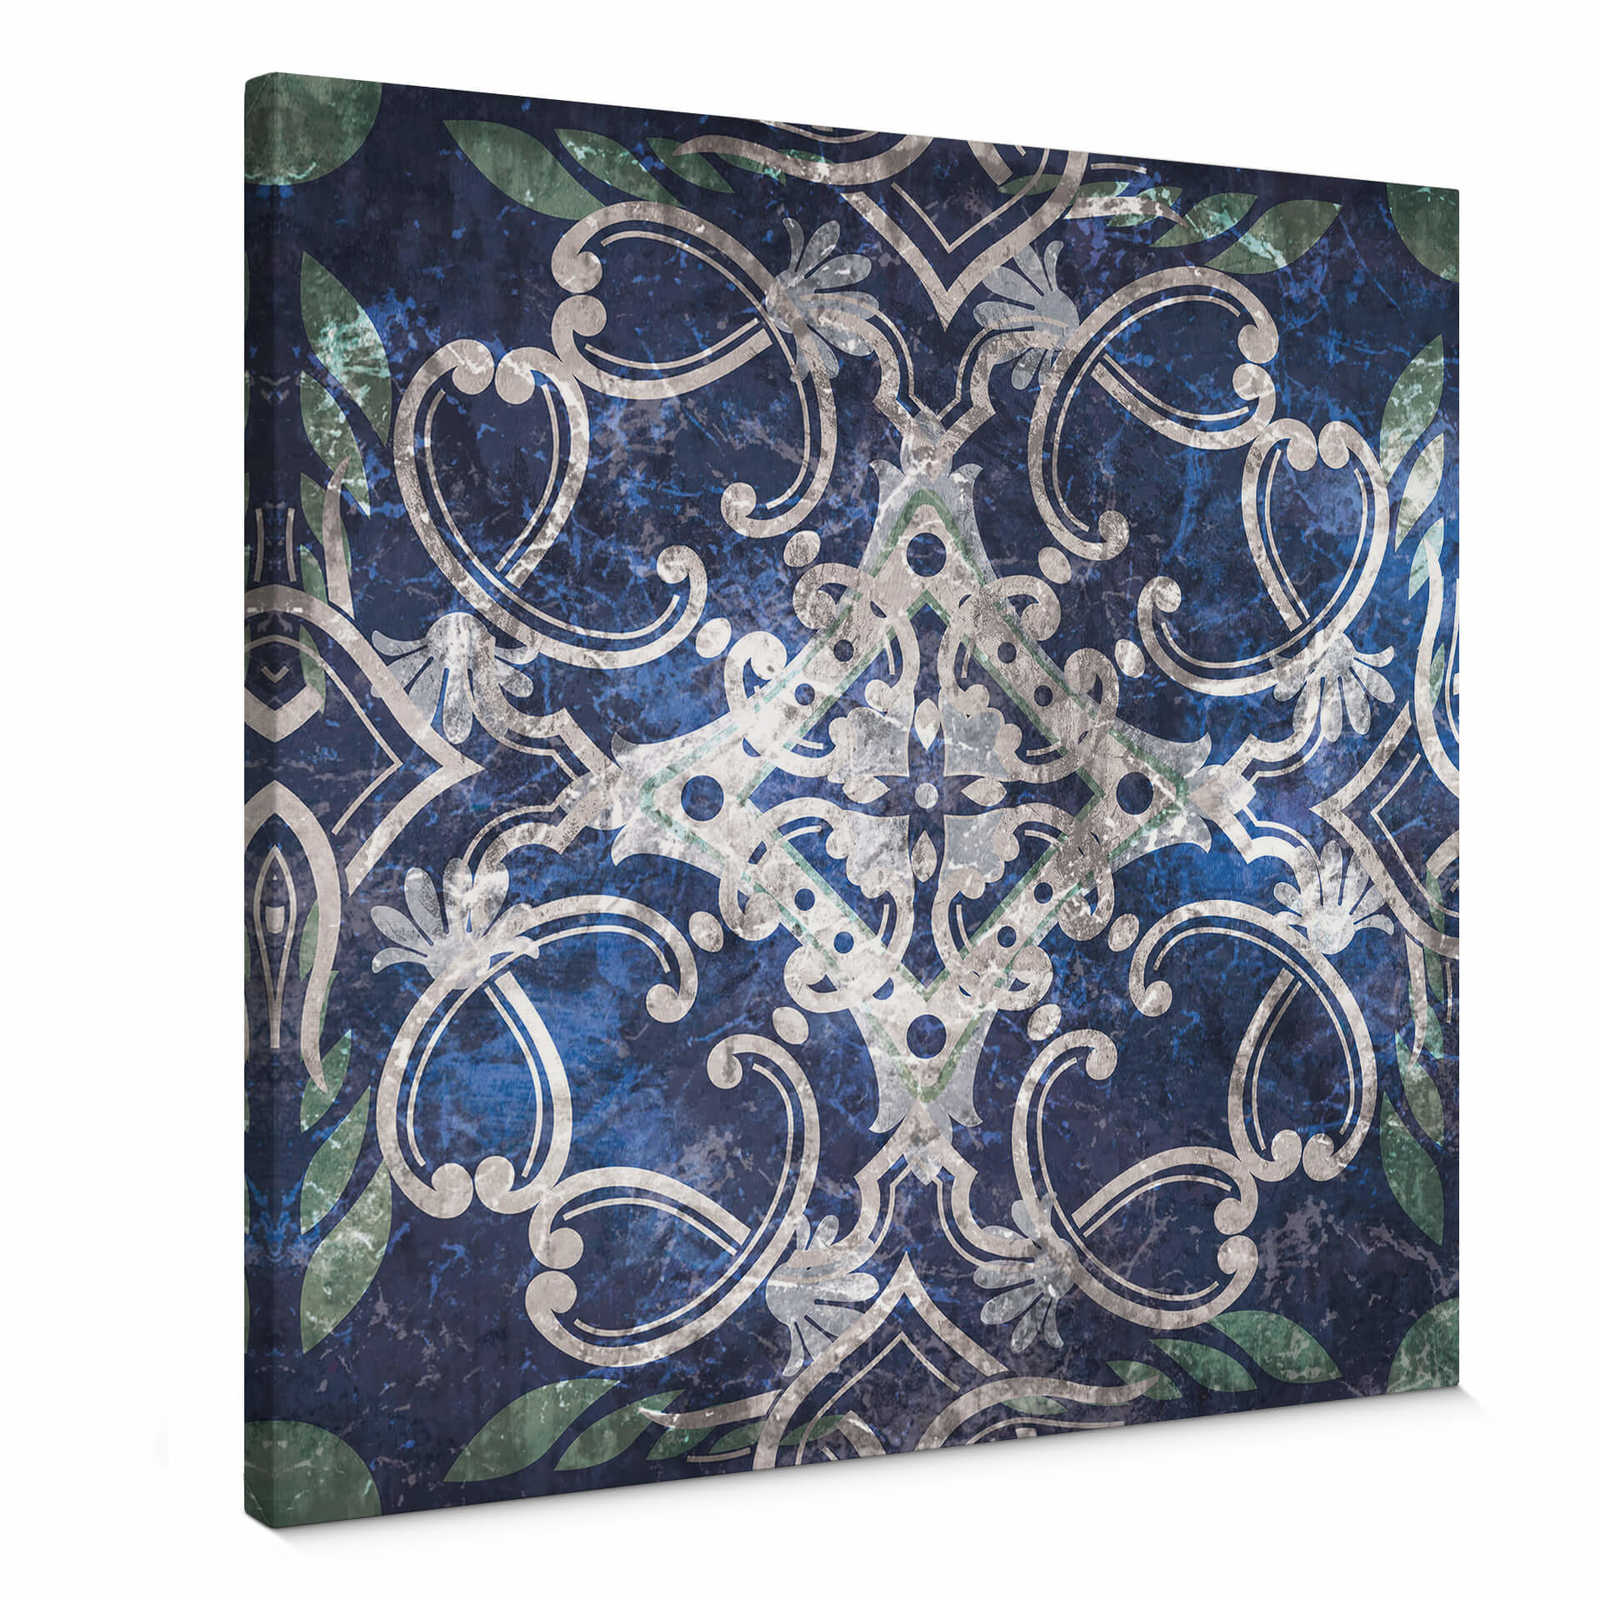         Quadratisches Leinwandbild in Blau mit orientalischem Design – 0,50 m x 0,50 m
    